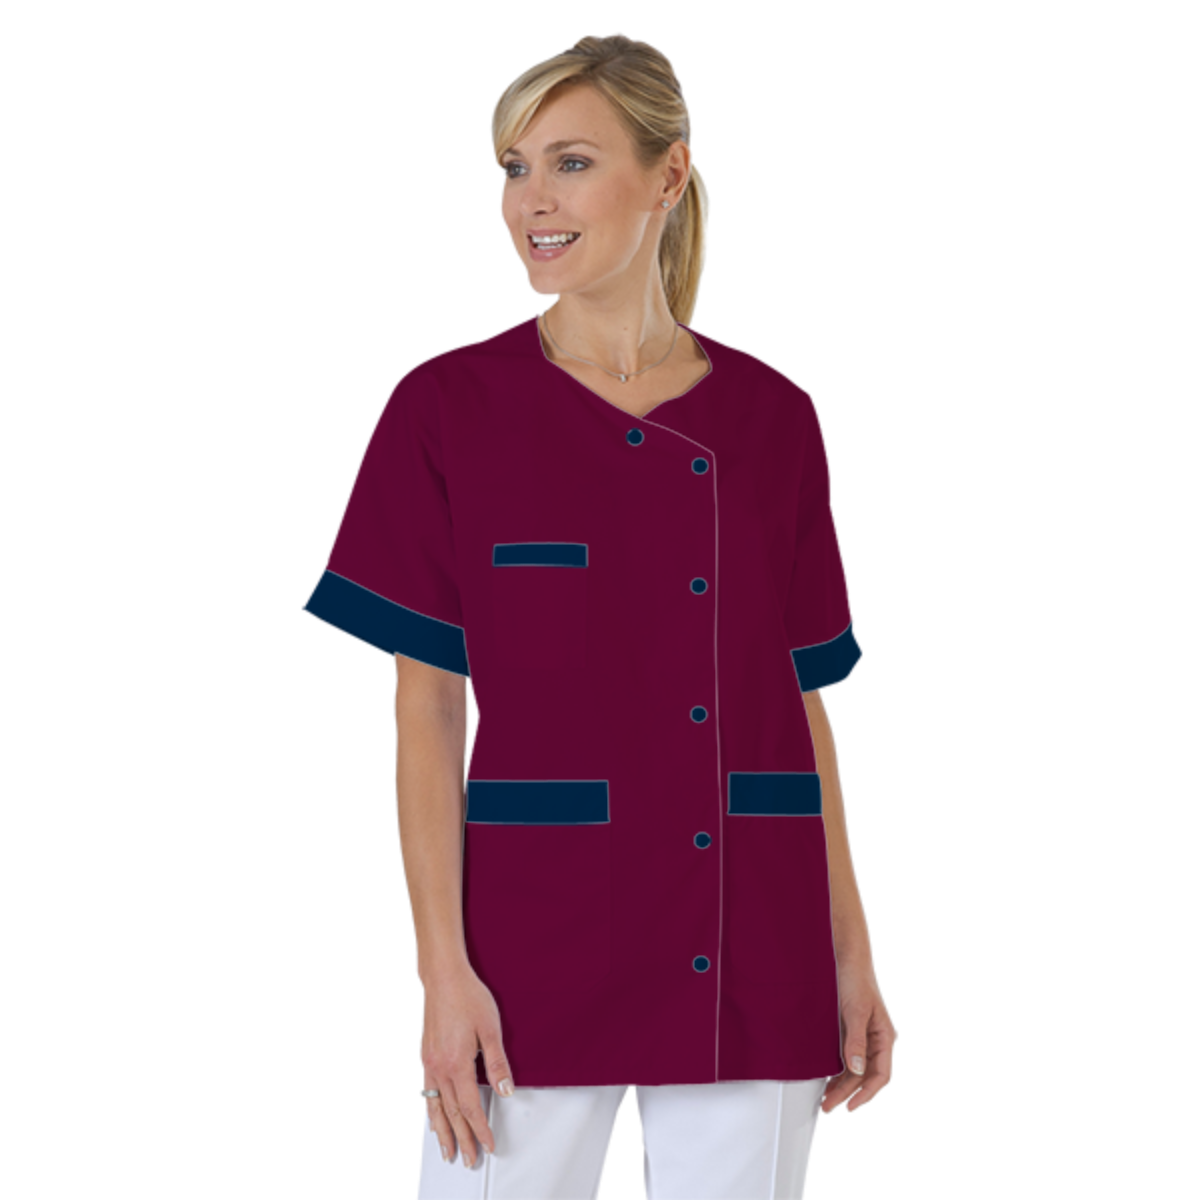 blouse-infirmiere-personnalise-col-trapeze acheté - par Amandine - le 24-07-2020